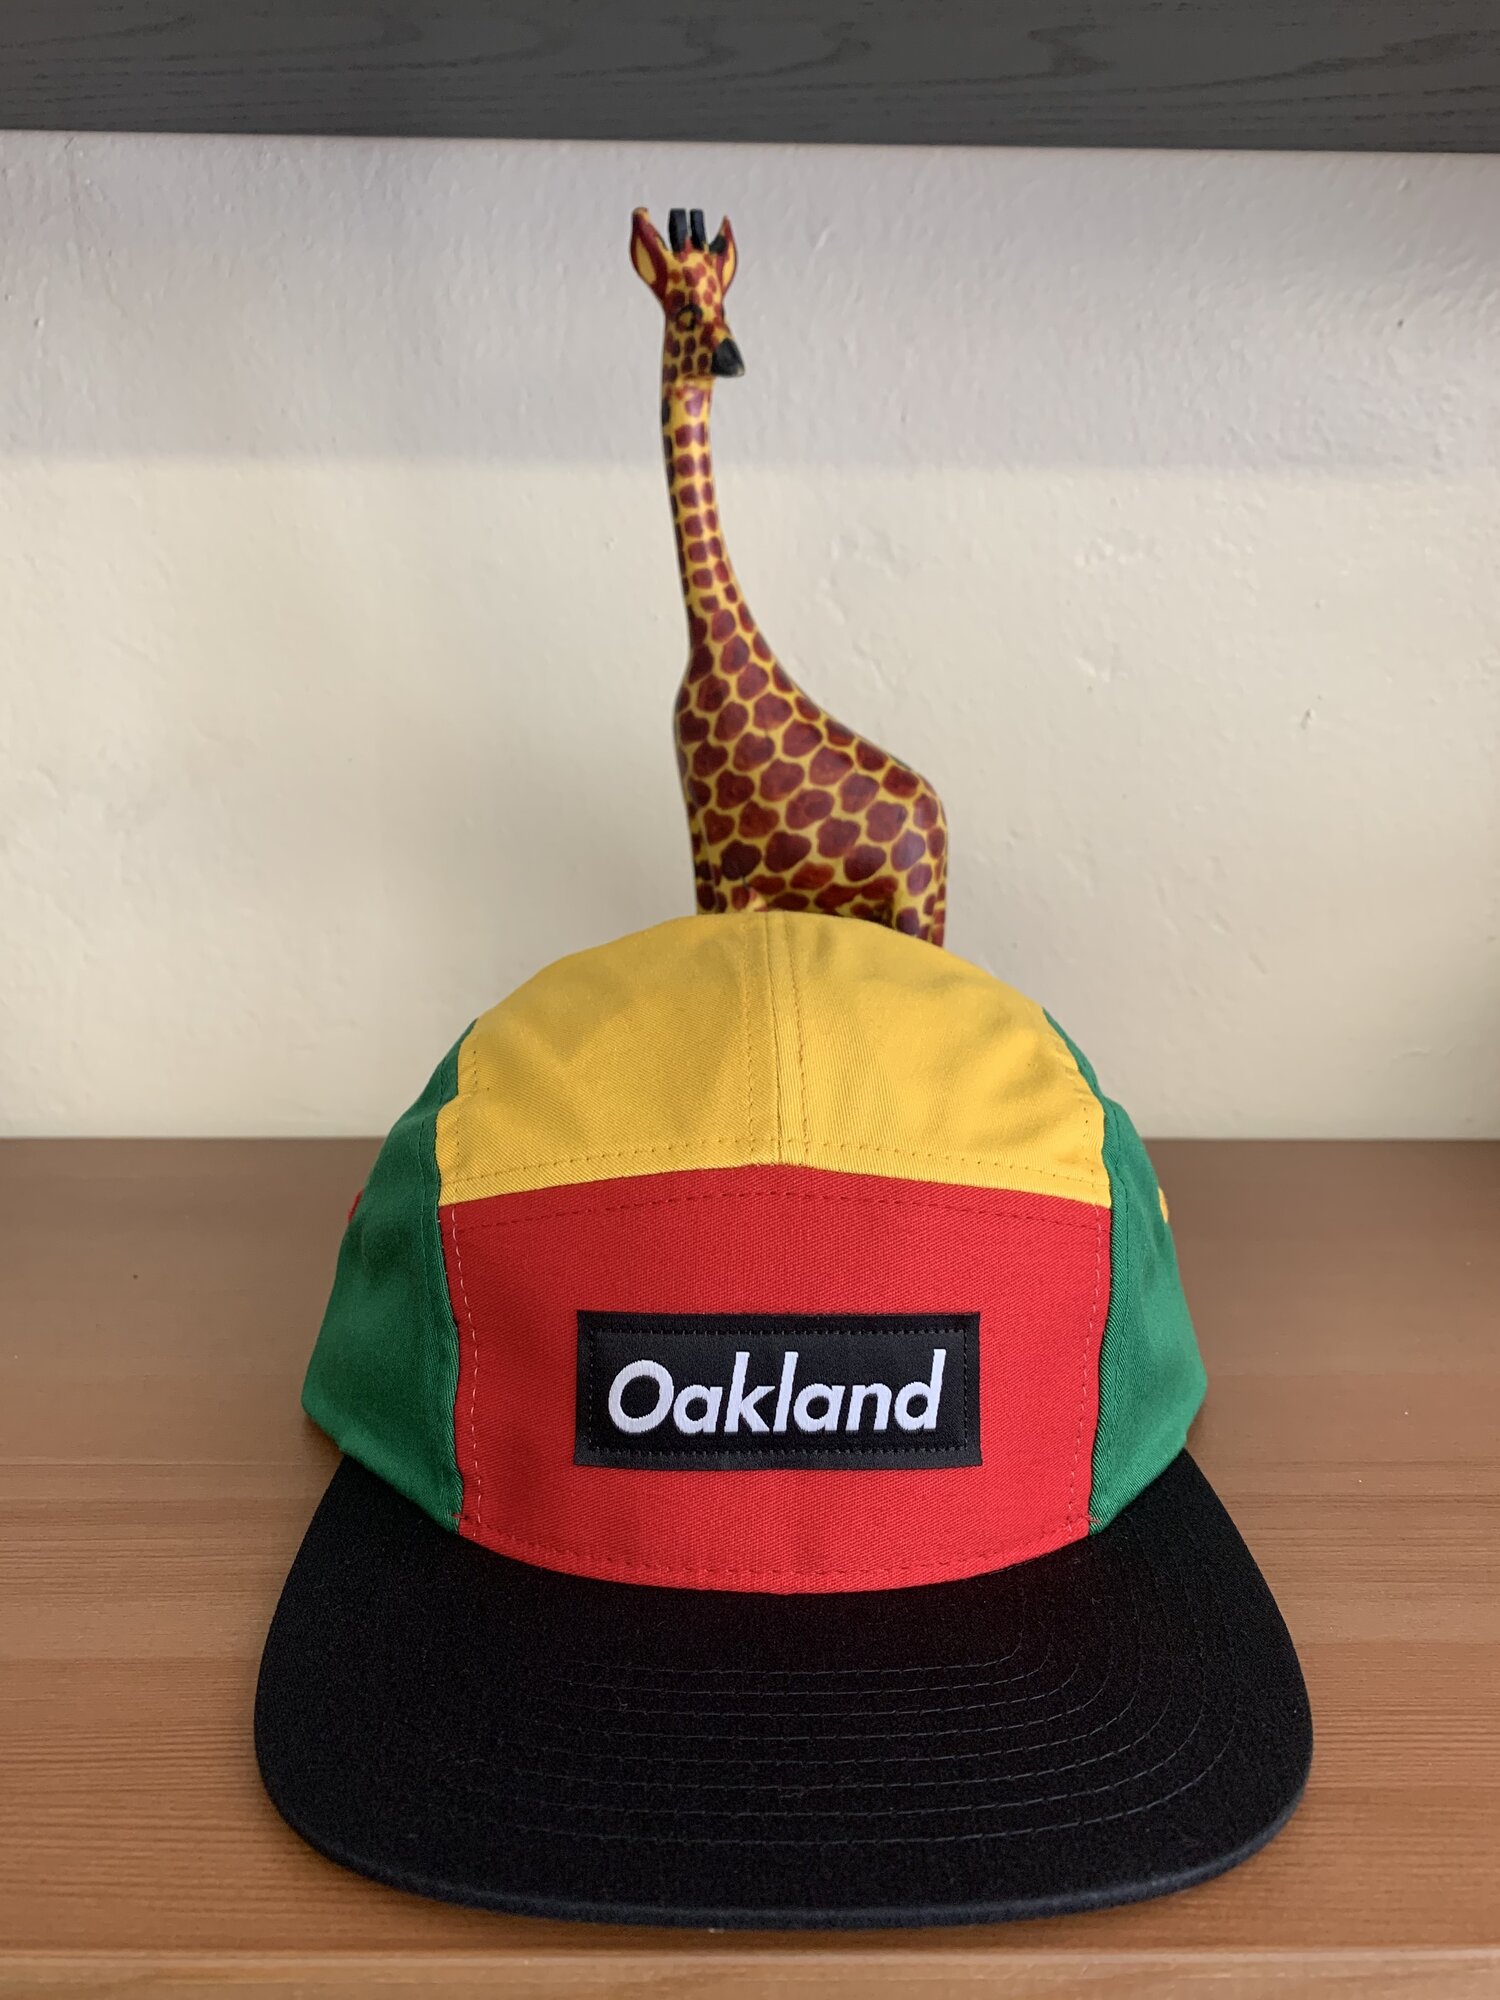 Oakland's Own Windbreaker